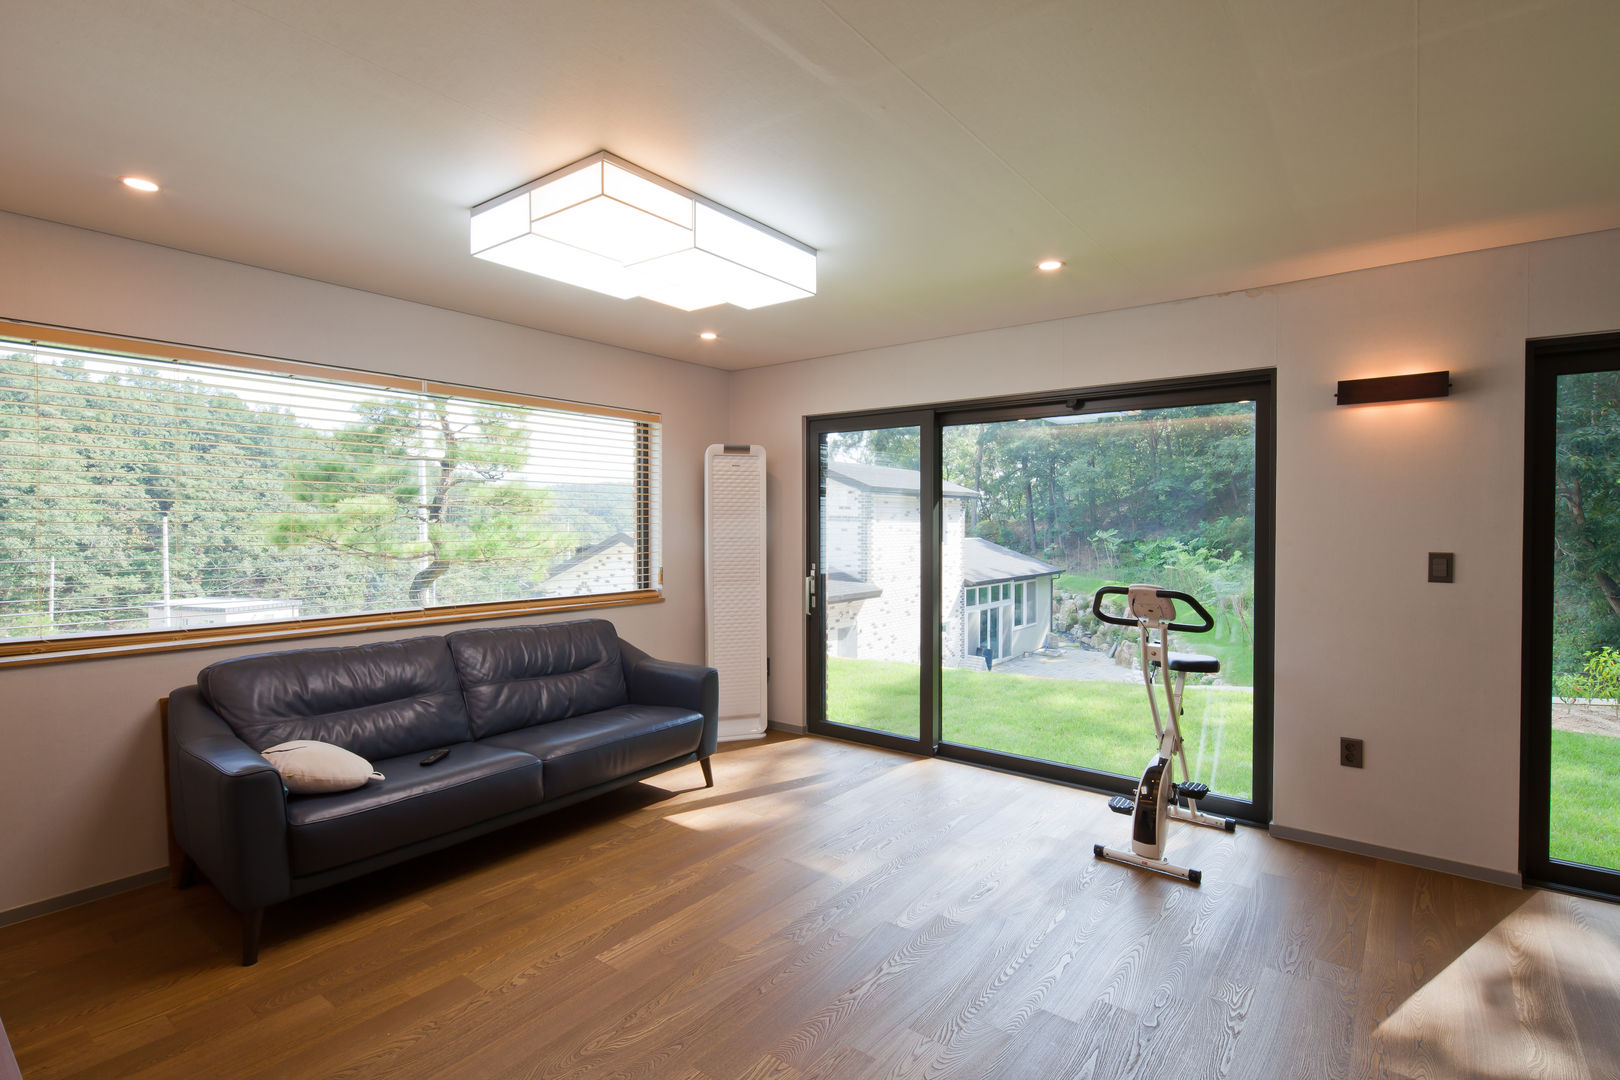 [양평목조주택] 양서면 도곡리에 위치한 양평목조주택 실내/실외, 위드하임 Withheim 위드하임 Withheim Scandinavian style living room